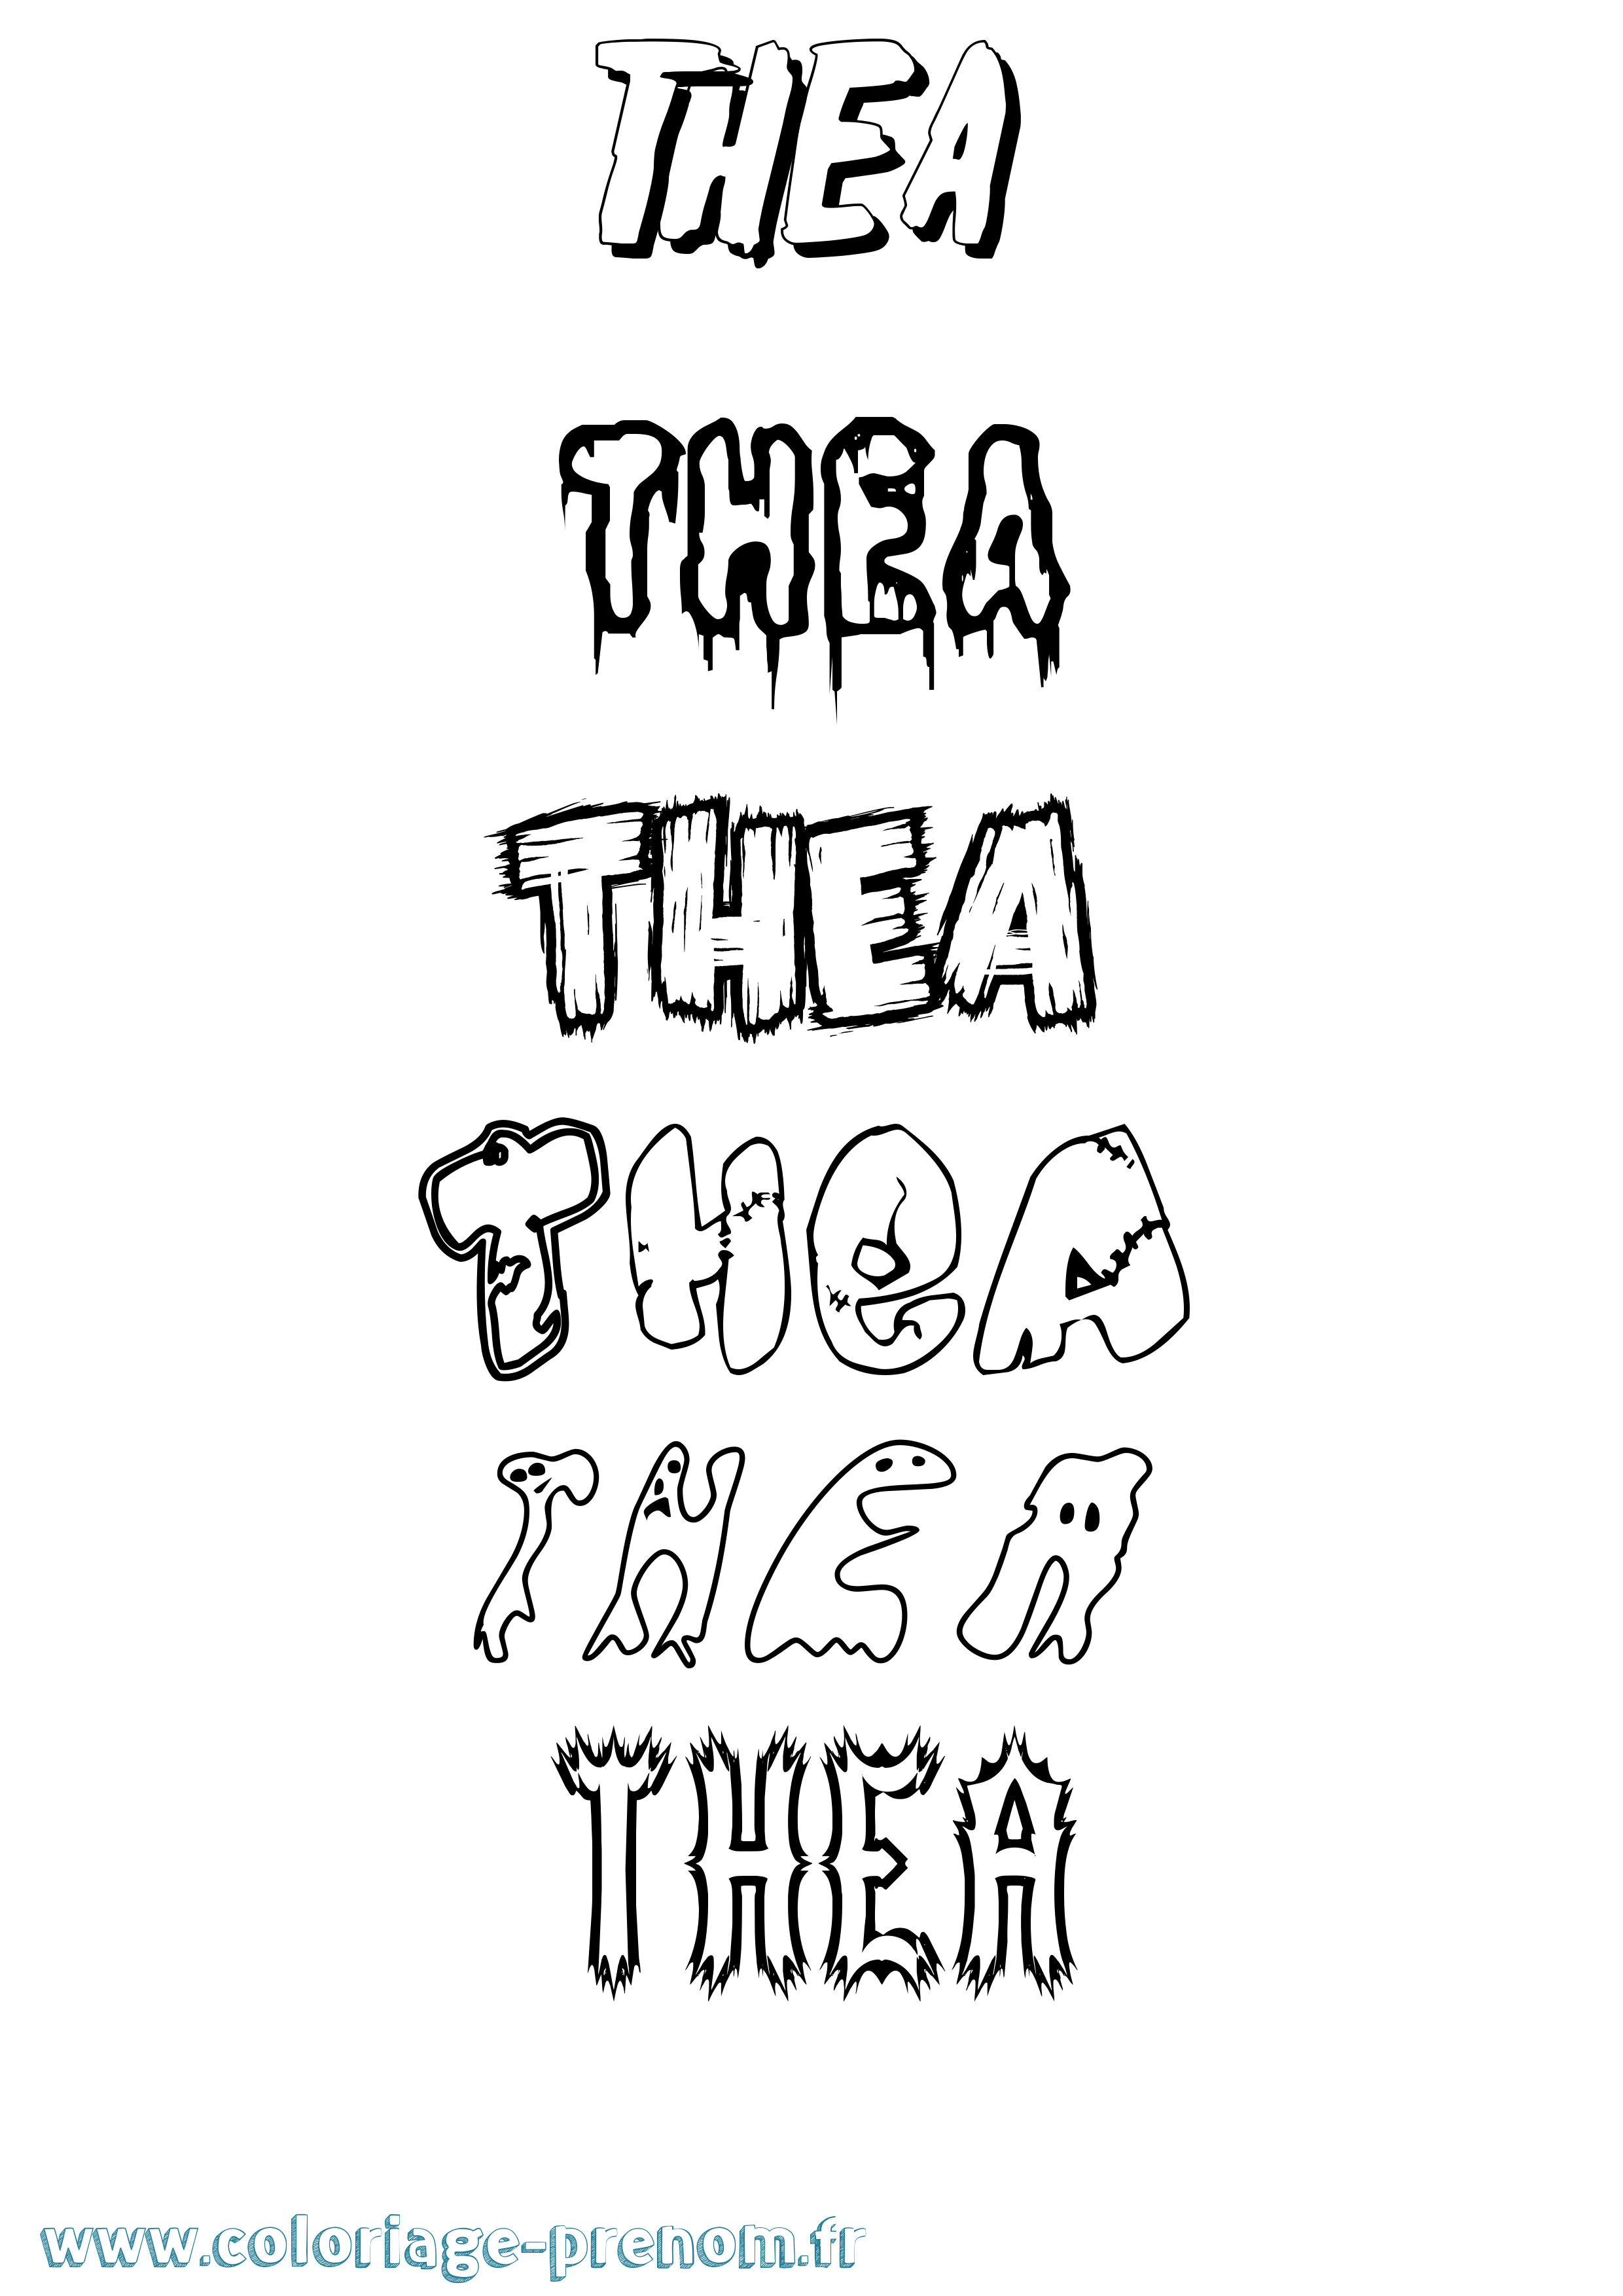 Coloriage prénom Thea